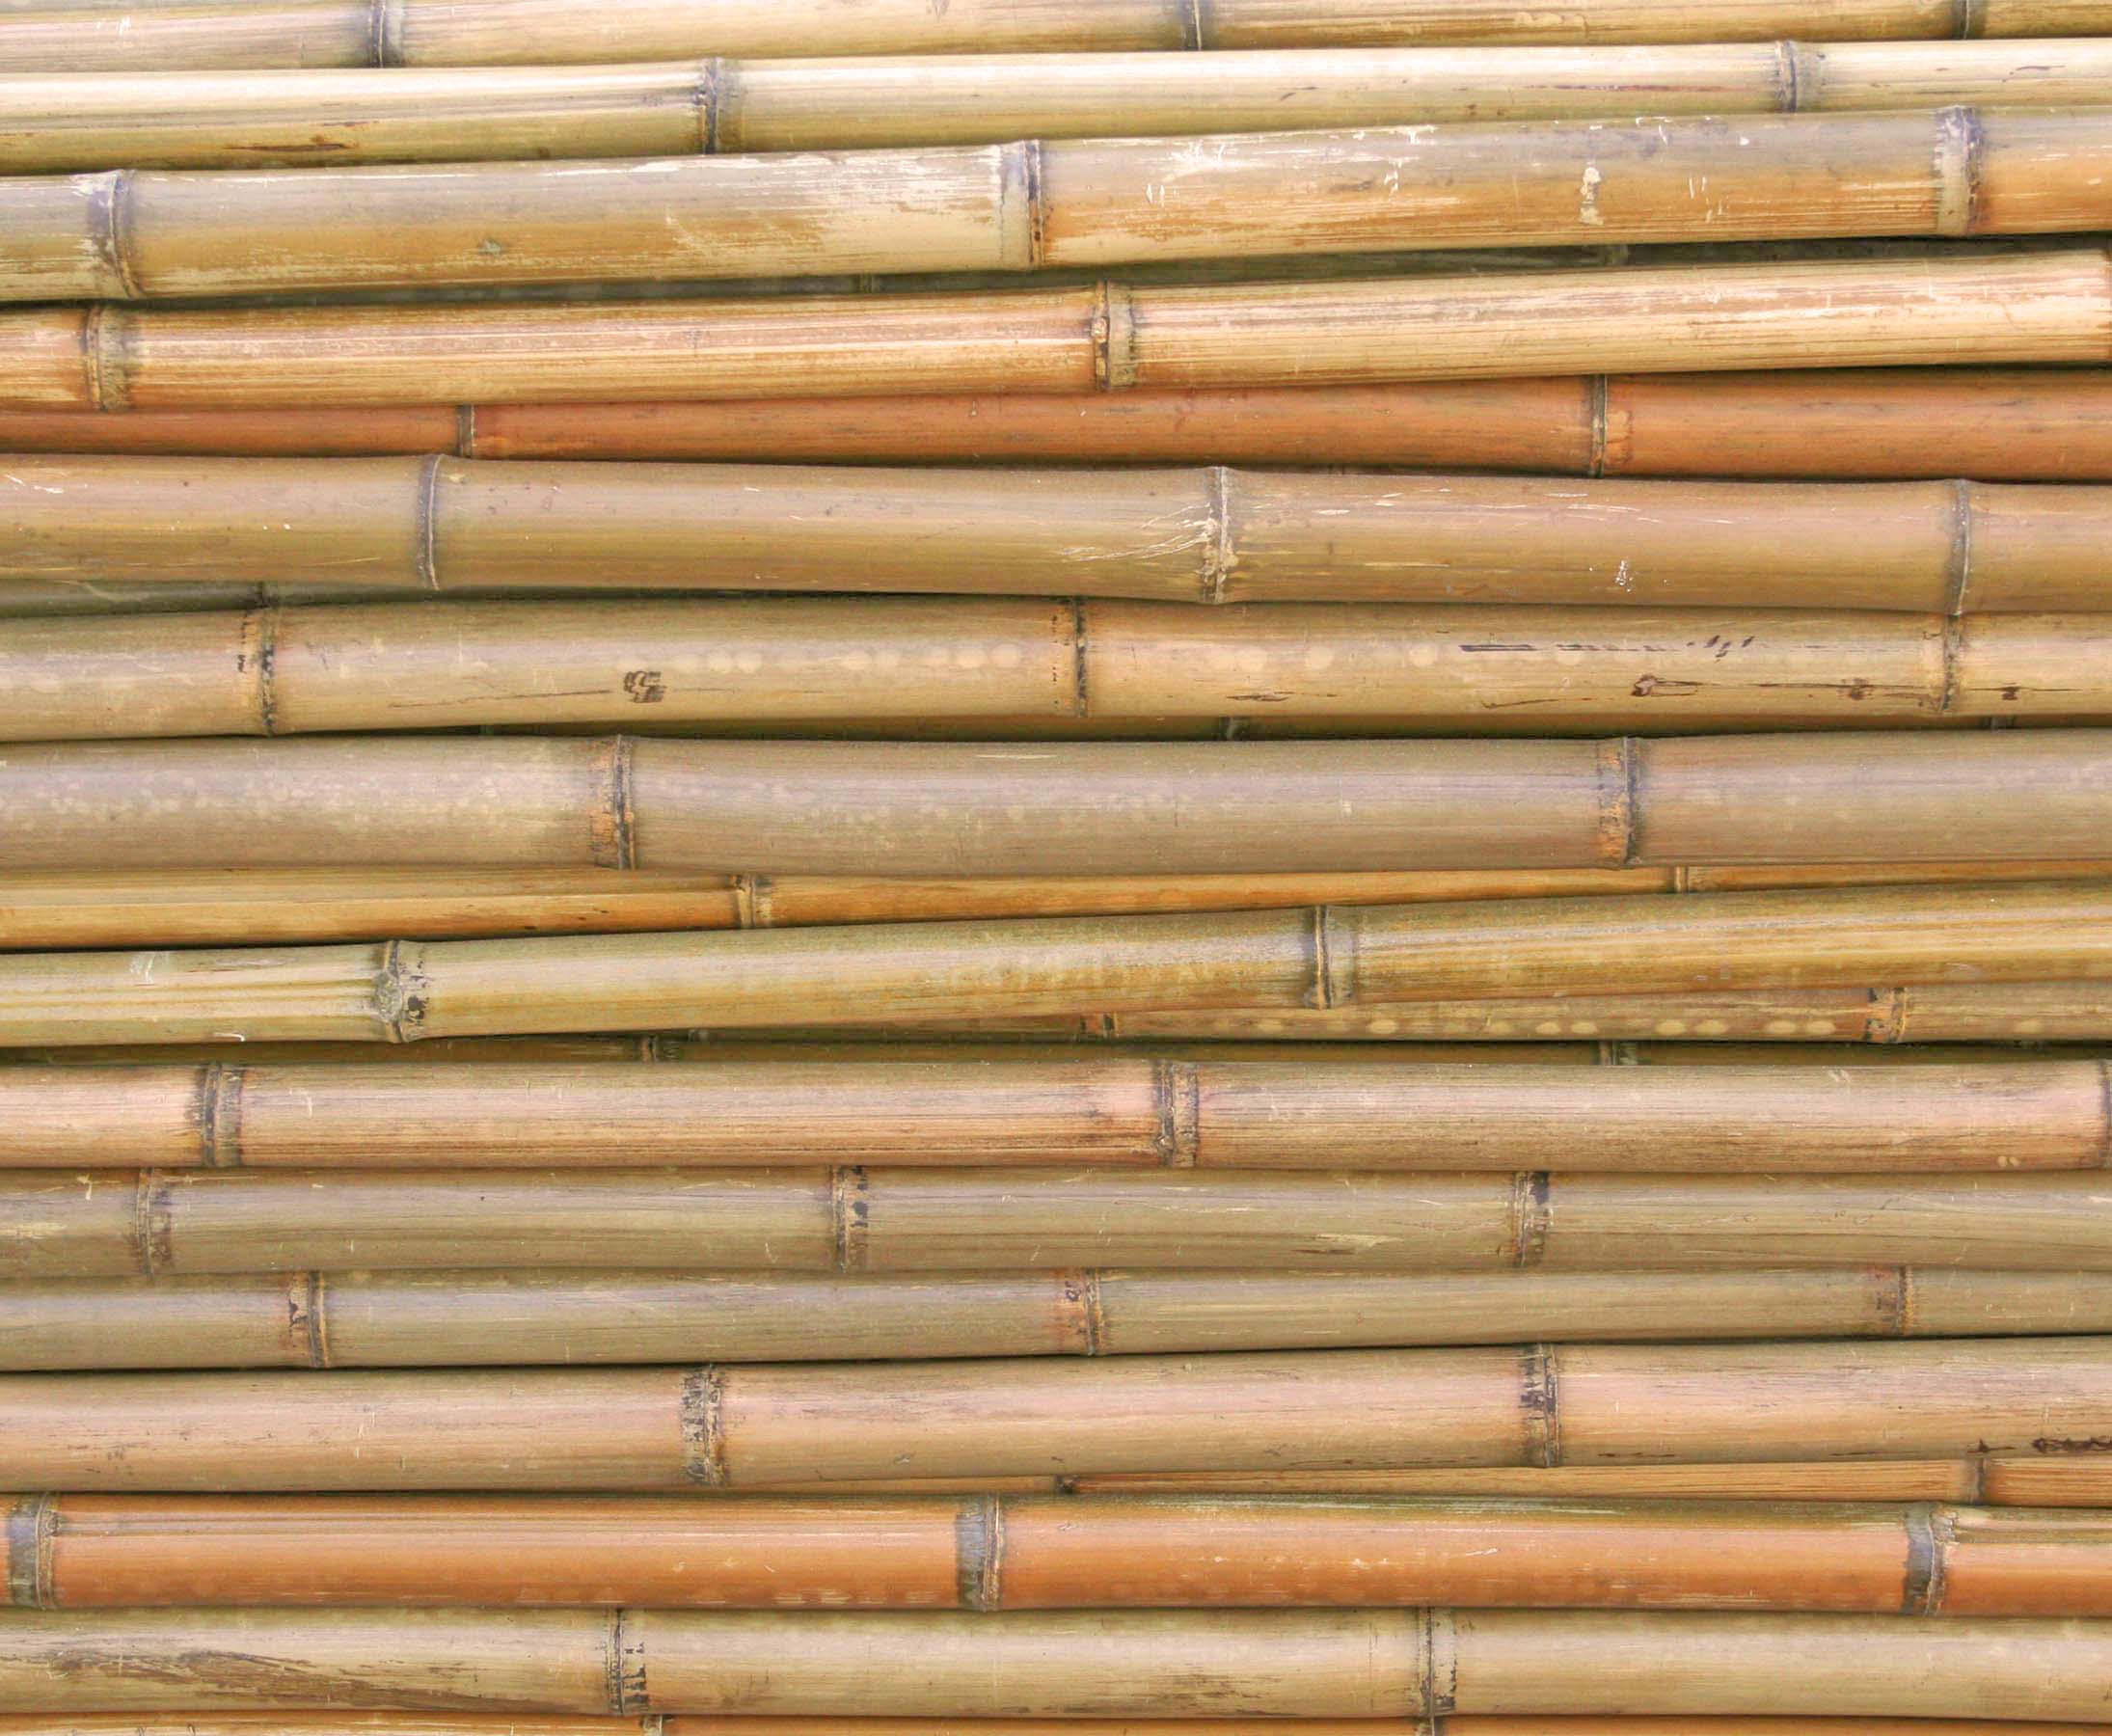 10 bis 12cm Bambus Rohr Bambus Latten farbige Bambusrohre Bamboo Bambus Halbschale Bambusstangen --> großes Sortiment an Bambusrohre und Rohre aus Bambus Bambus-Rohre Moso unbehandelt getrocknet und hitzebehandelt Bambus natur gelbbraun 150cm Durch